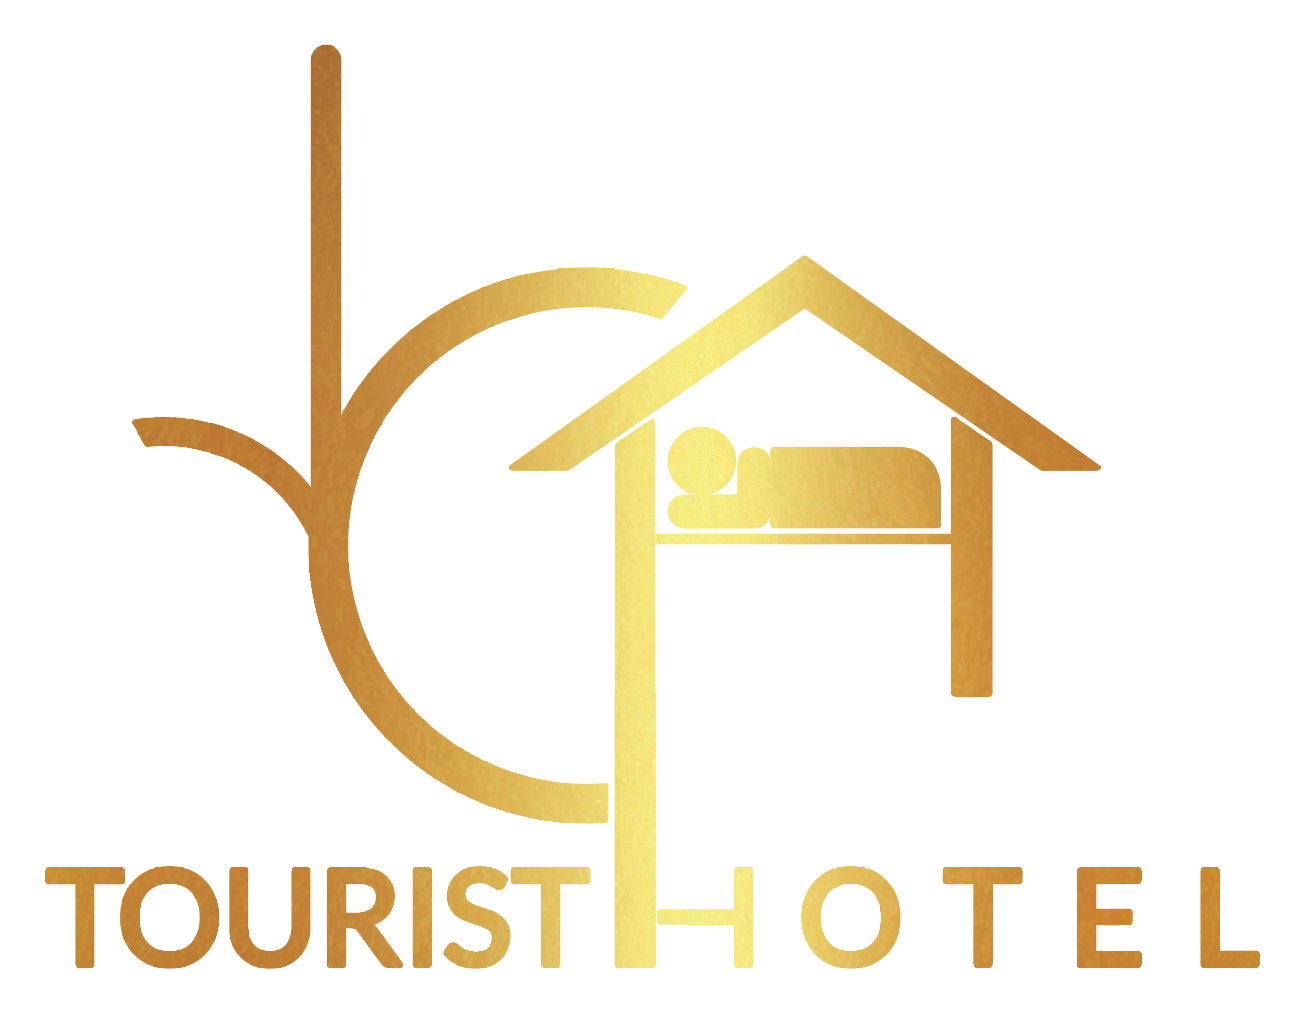 ارخص فندق بوسط البلد - ارخص فنادق في وسط البلد - عروض الفنادق في وسط البلد